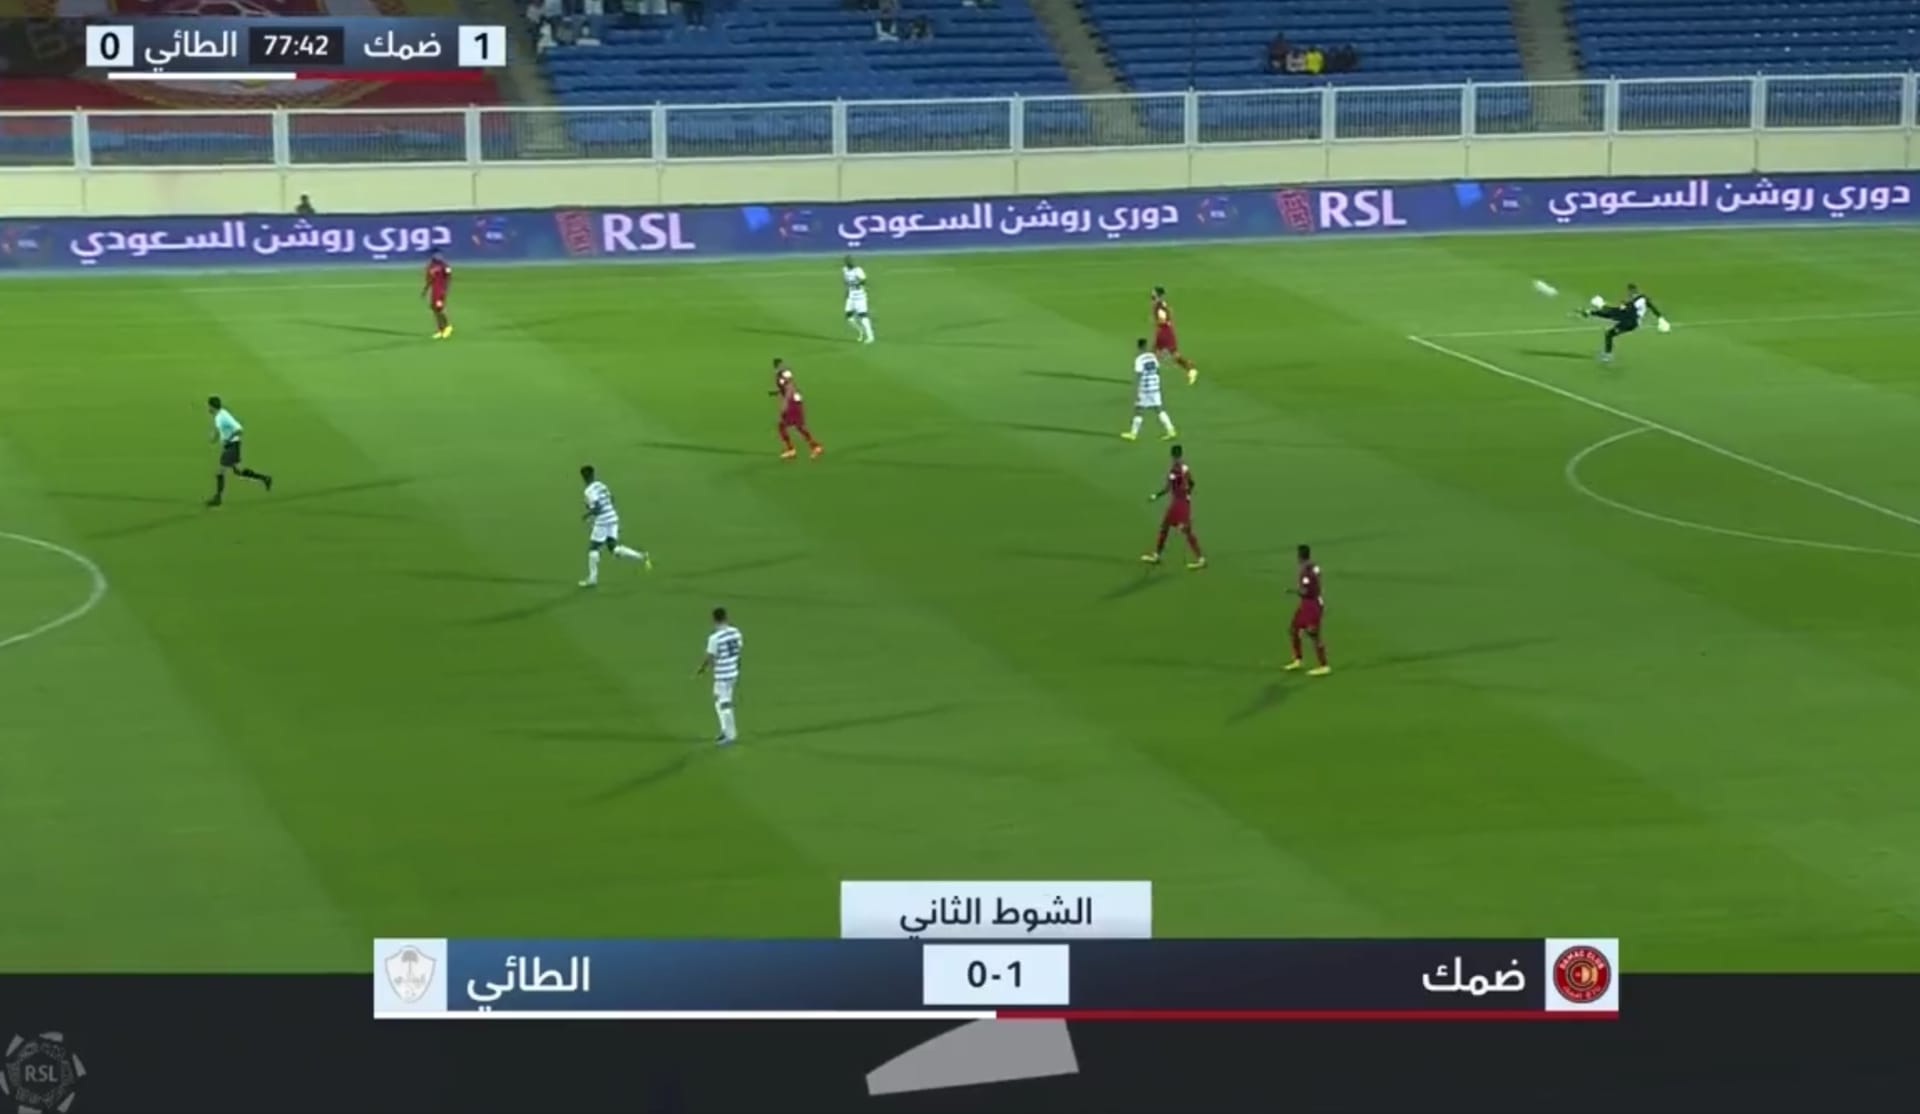 بأقدام حارس مرمى.. هدف "تاريخي" يخطف الأنظار في الدوري السعودي